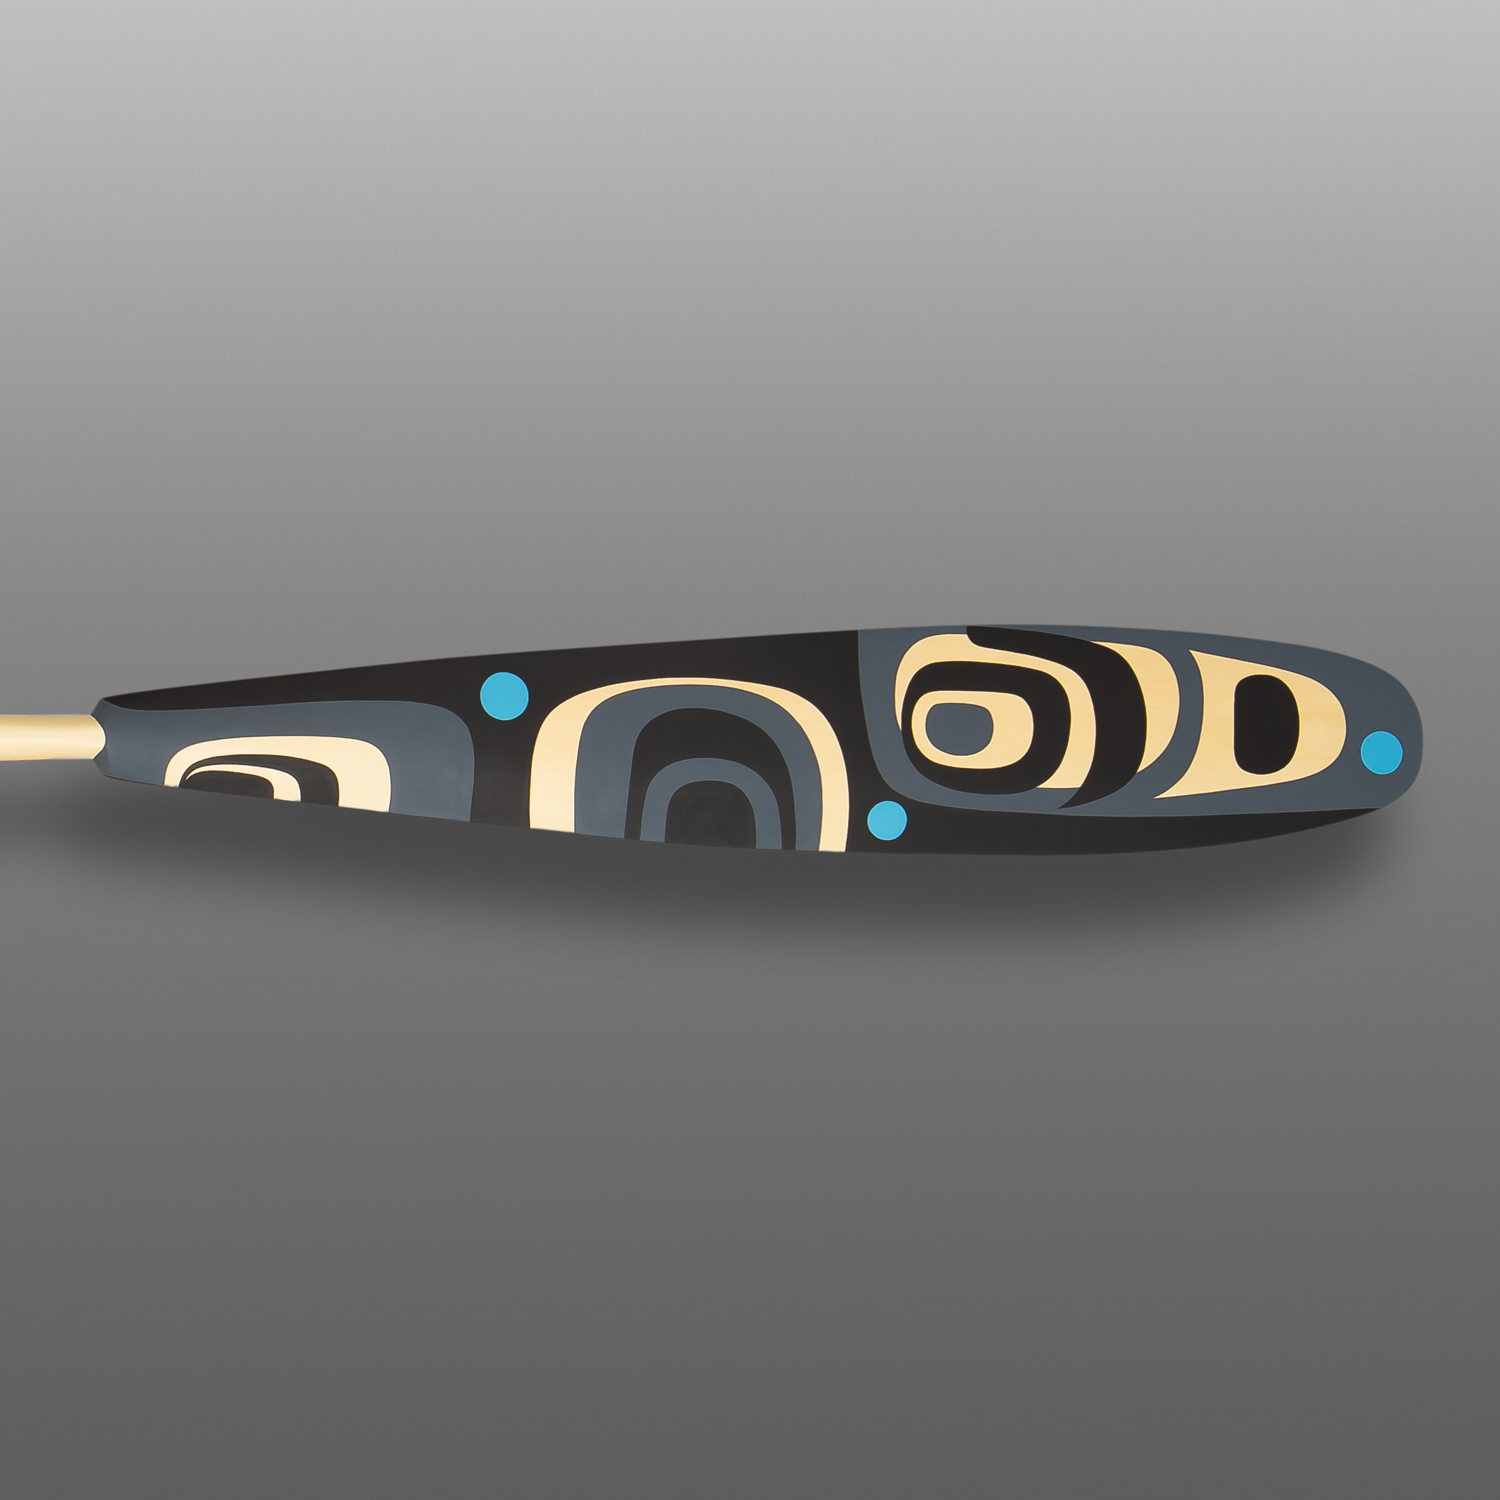 Killerwhale Spirit Paddle II Steve Smith - Dla'kwagila
OweekenoYellow cedar, paint
62½” x 5¾” x 1½”$7800